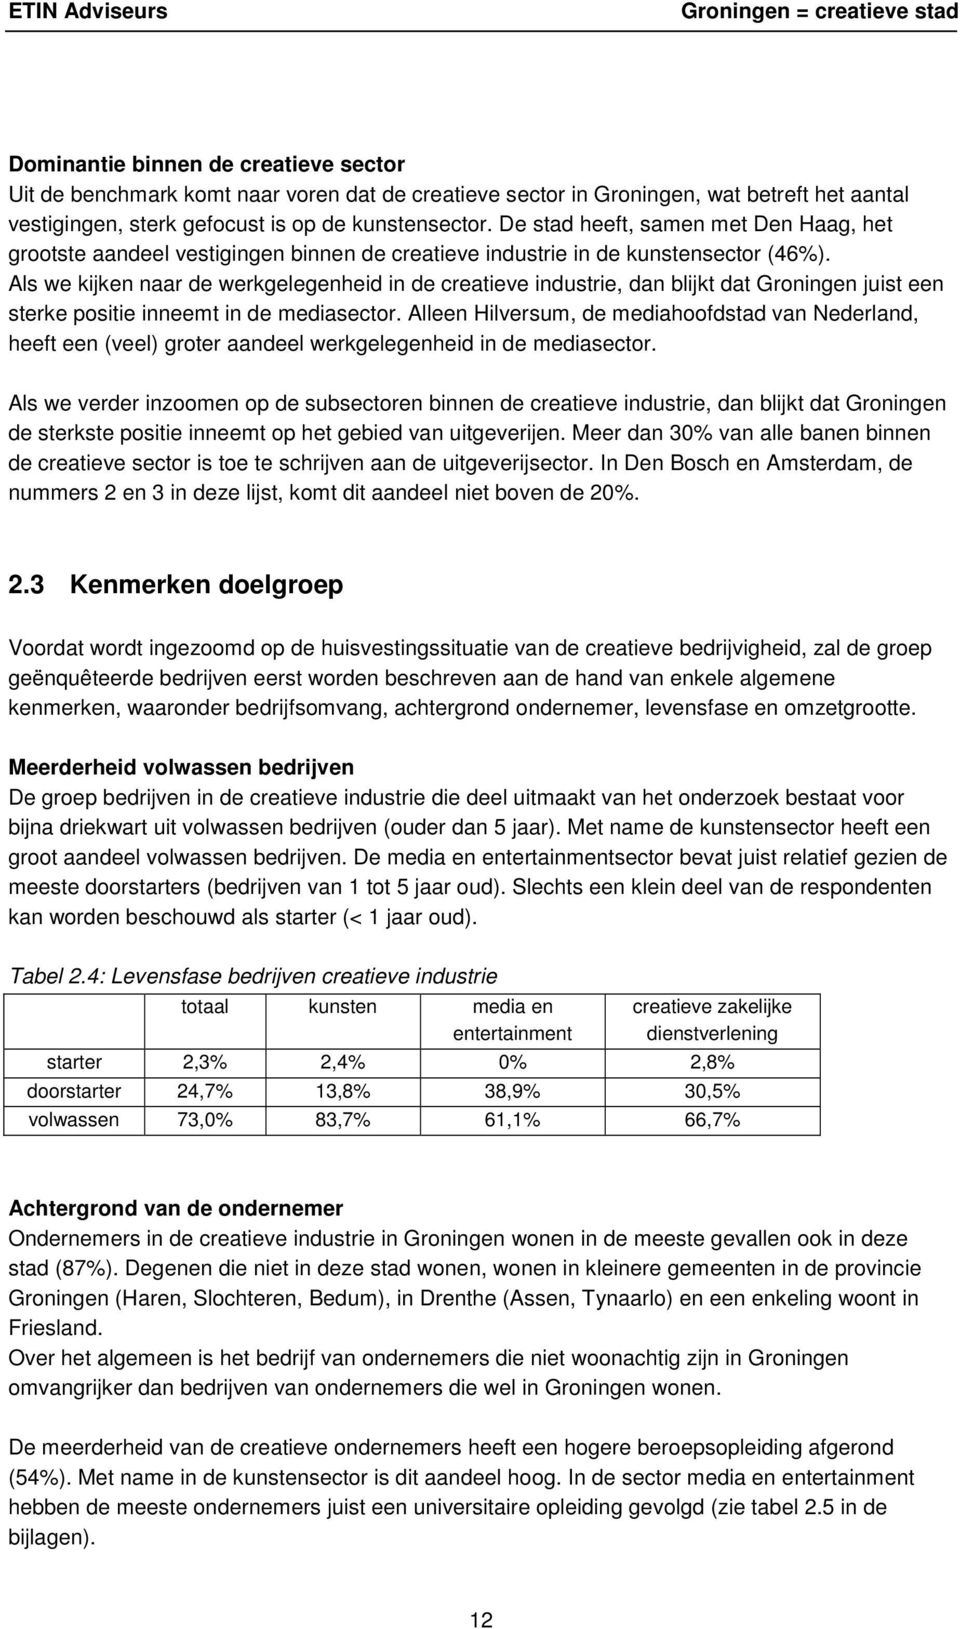 Als we kijken naar de werkgelegenheid in de creatieve industrie, dan blijkt dat Groningen juist een sterke positie inneemt in de mediasector.